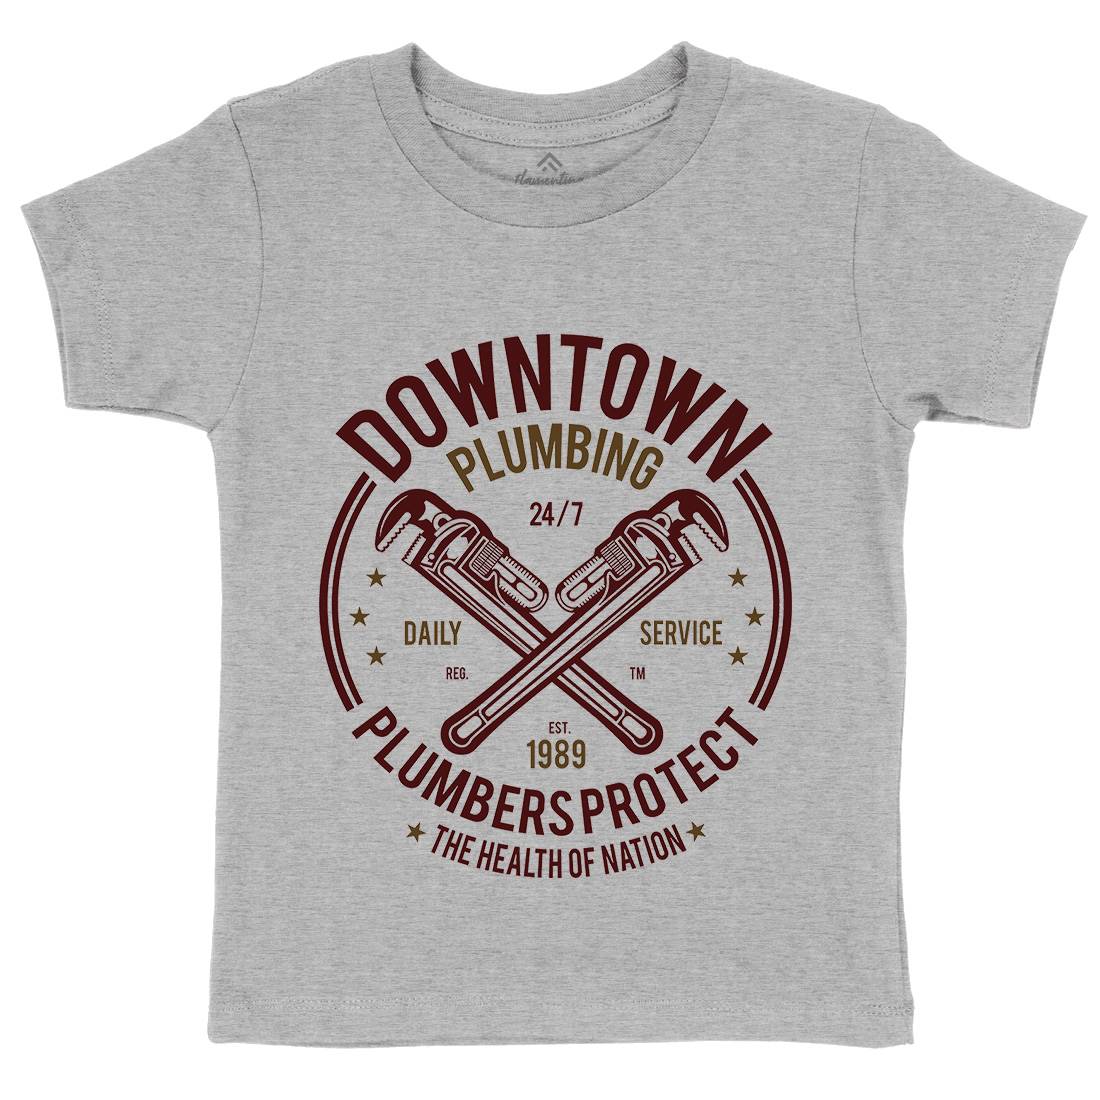 Downtown Plumbing Kids Crew Neck T-Shirt Work A046